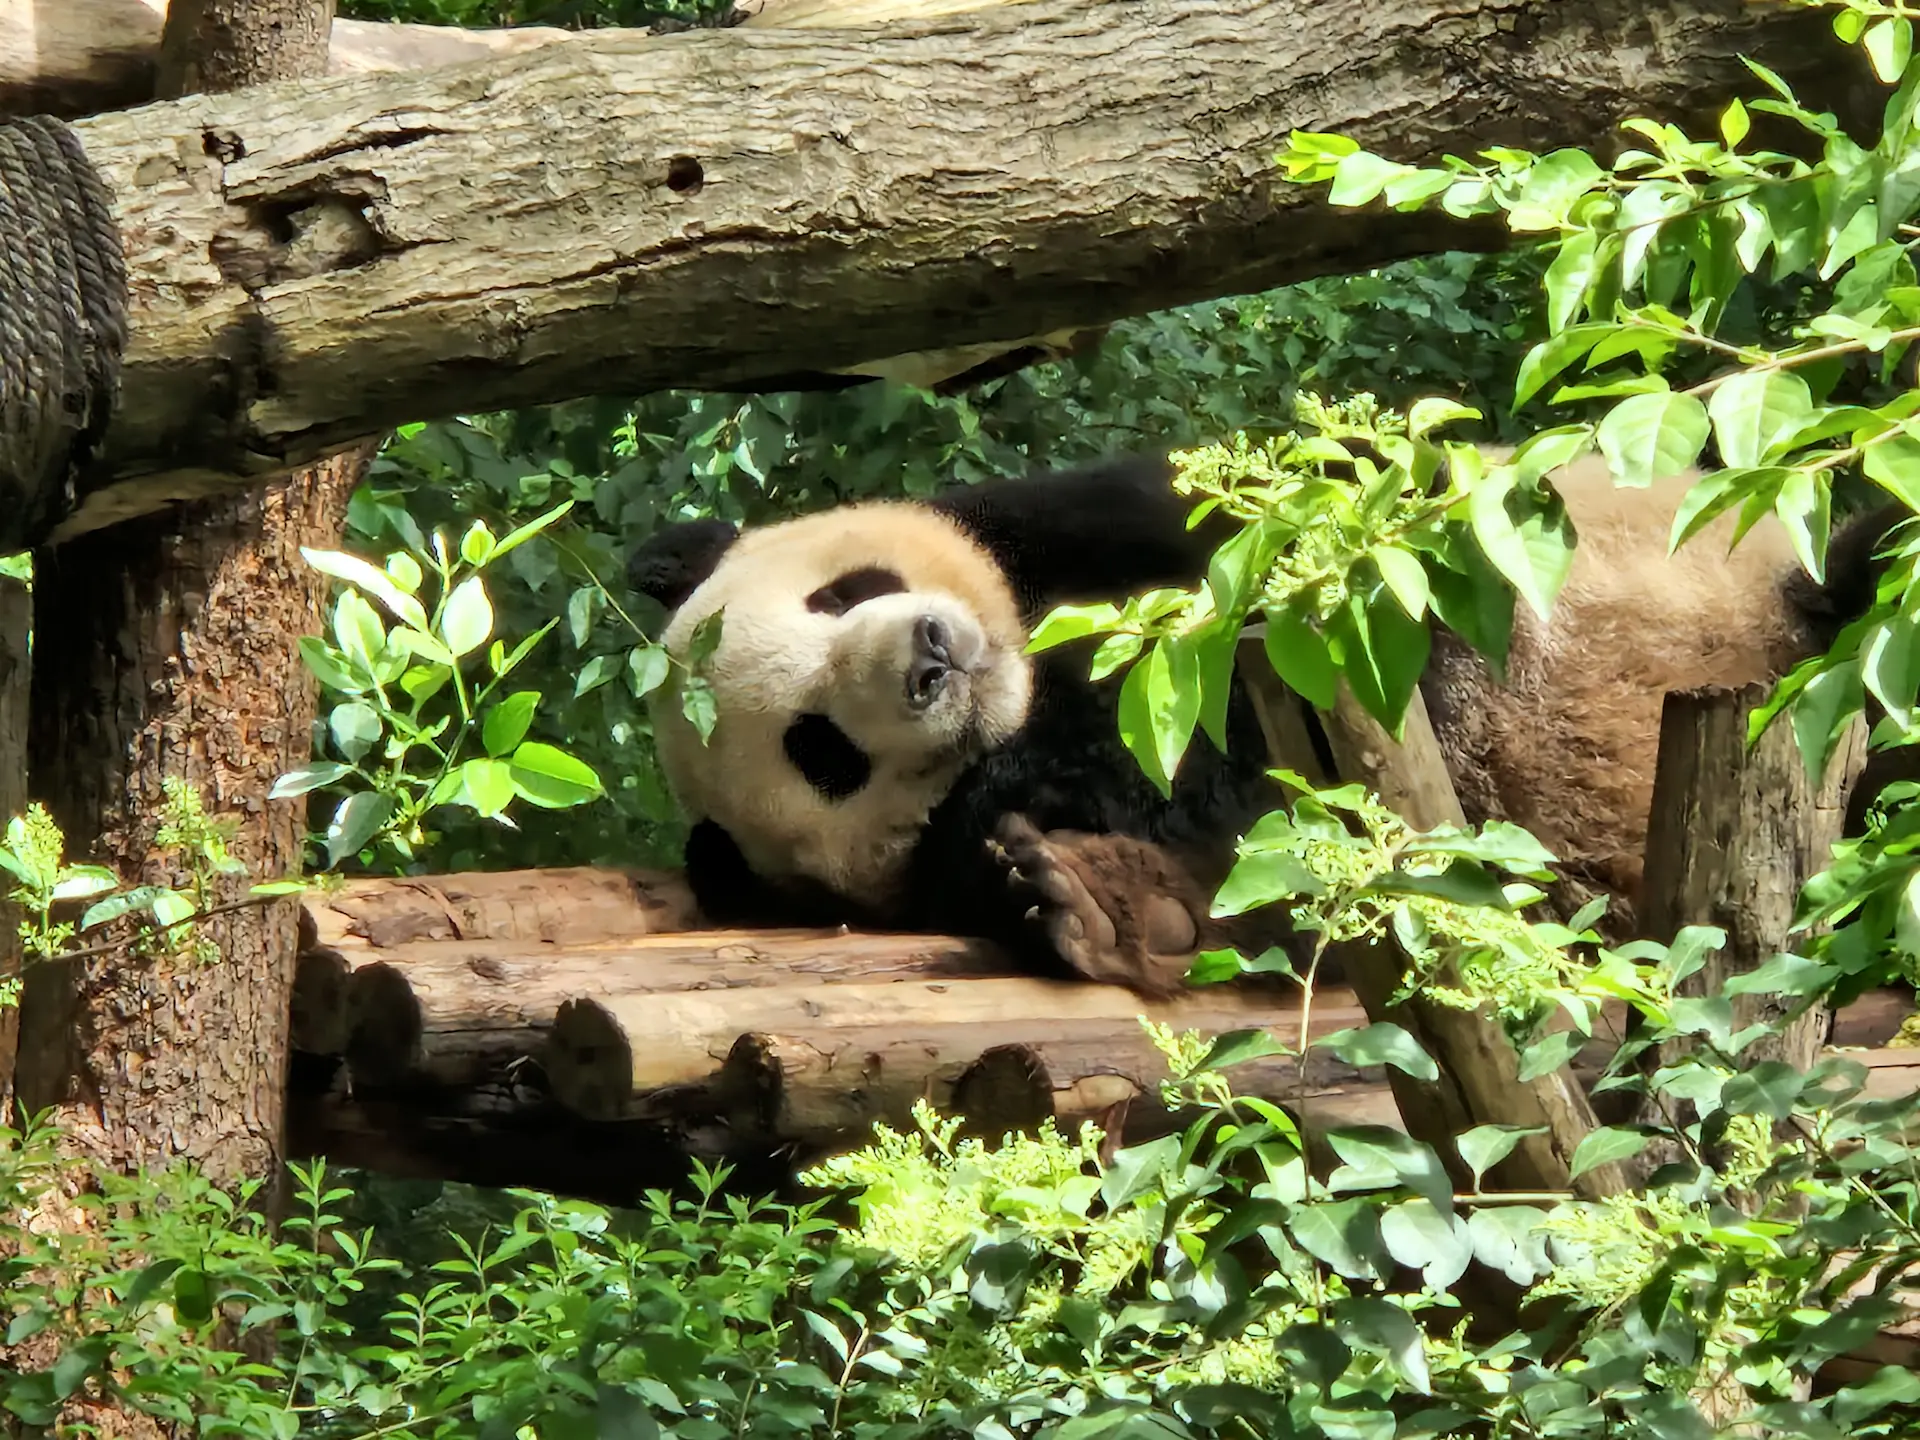 Un autre panda dort, affalé sur une plateforme en bois.